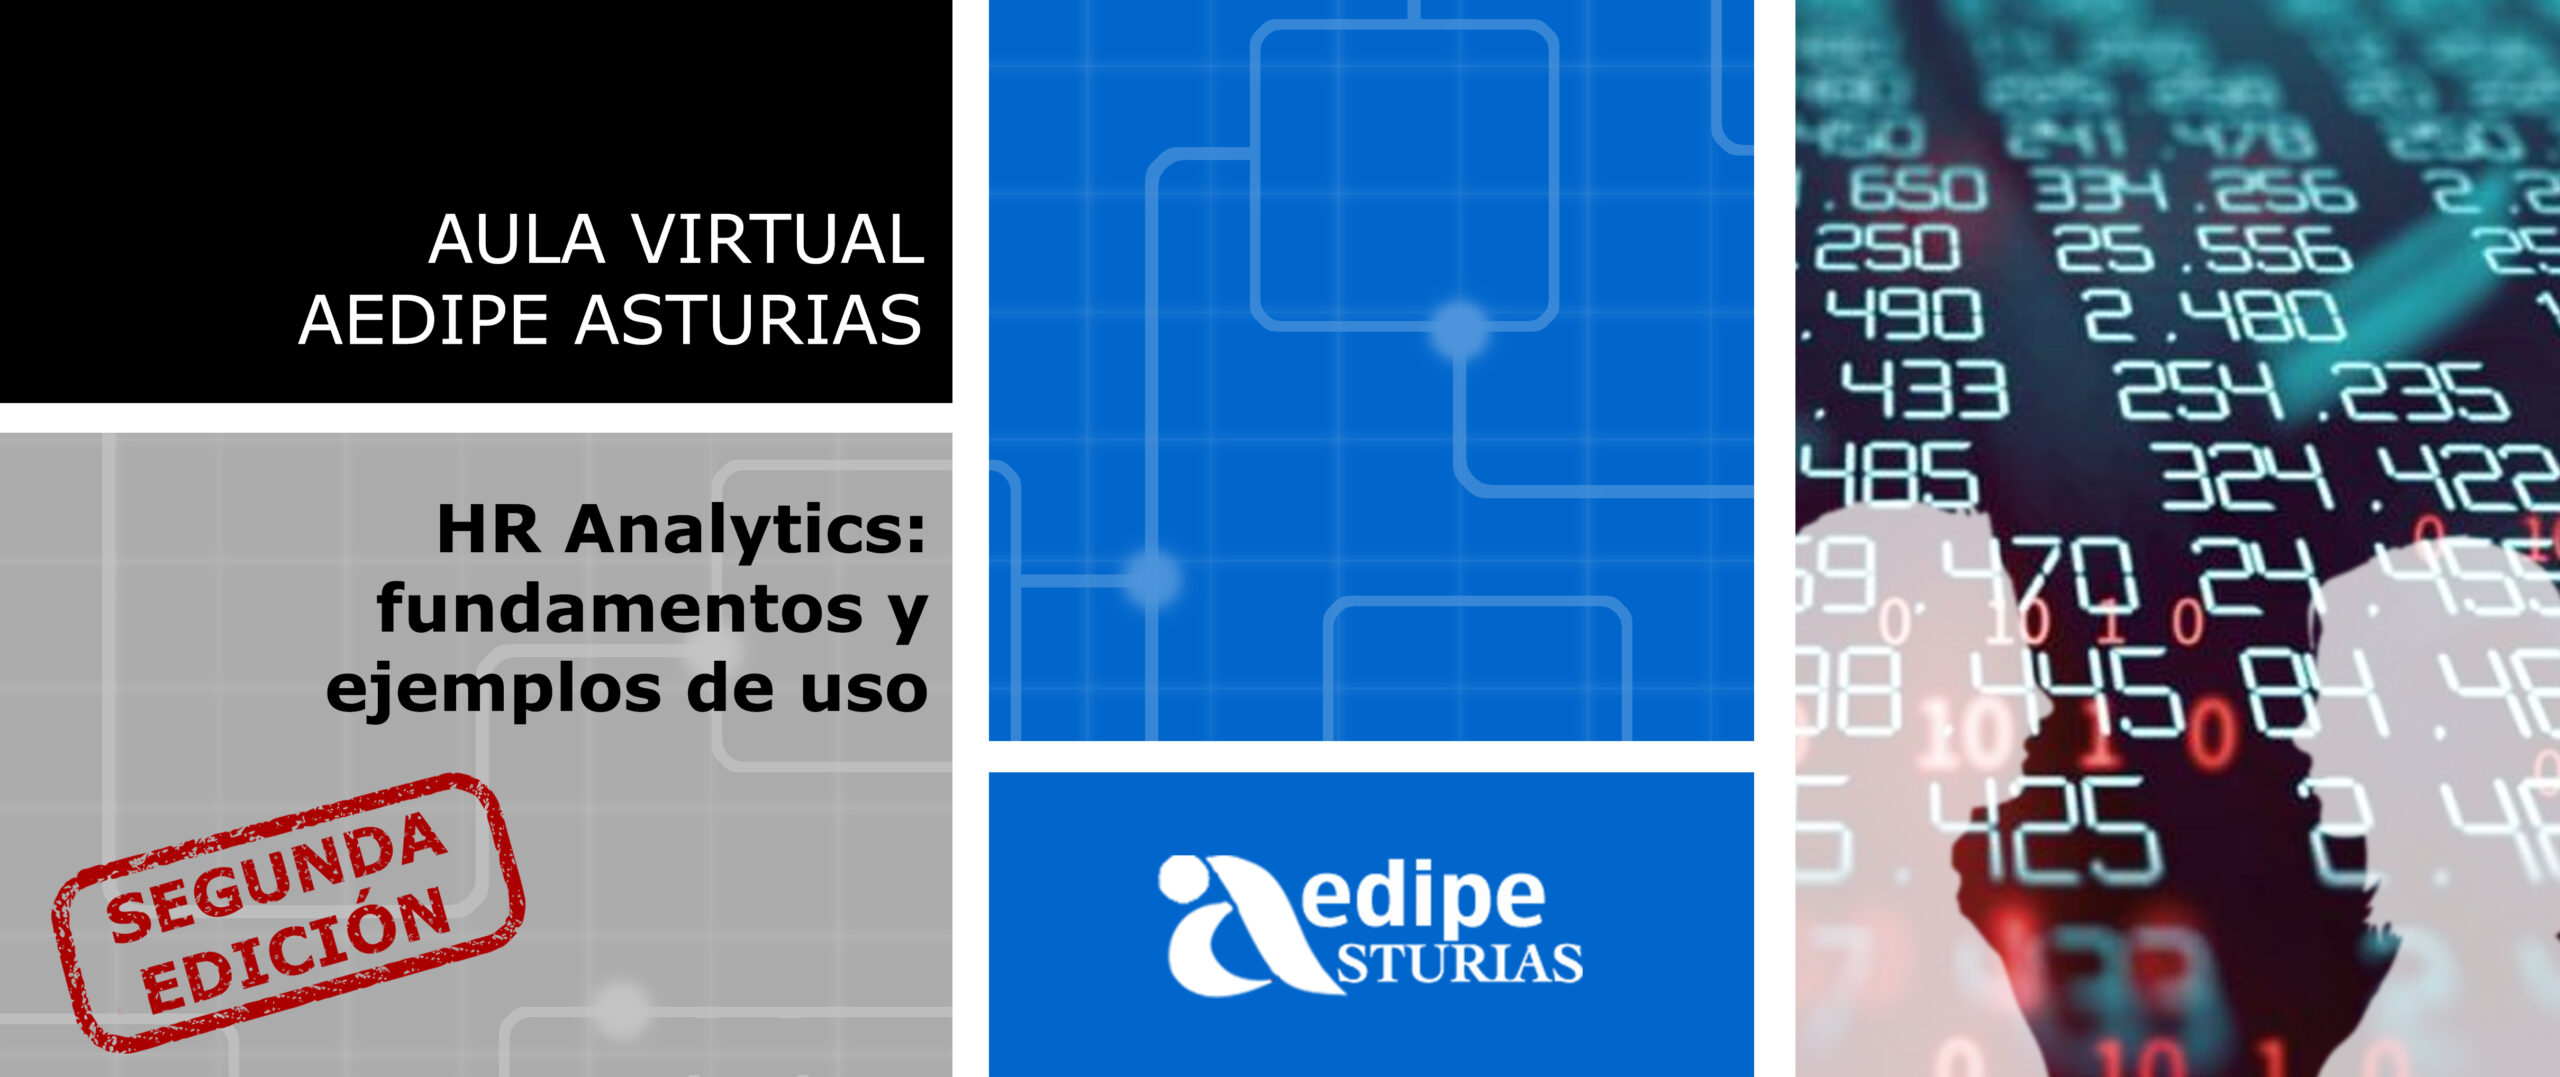 Aula Virtual - HR Analytics: fundamentos y ejemplos de uso